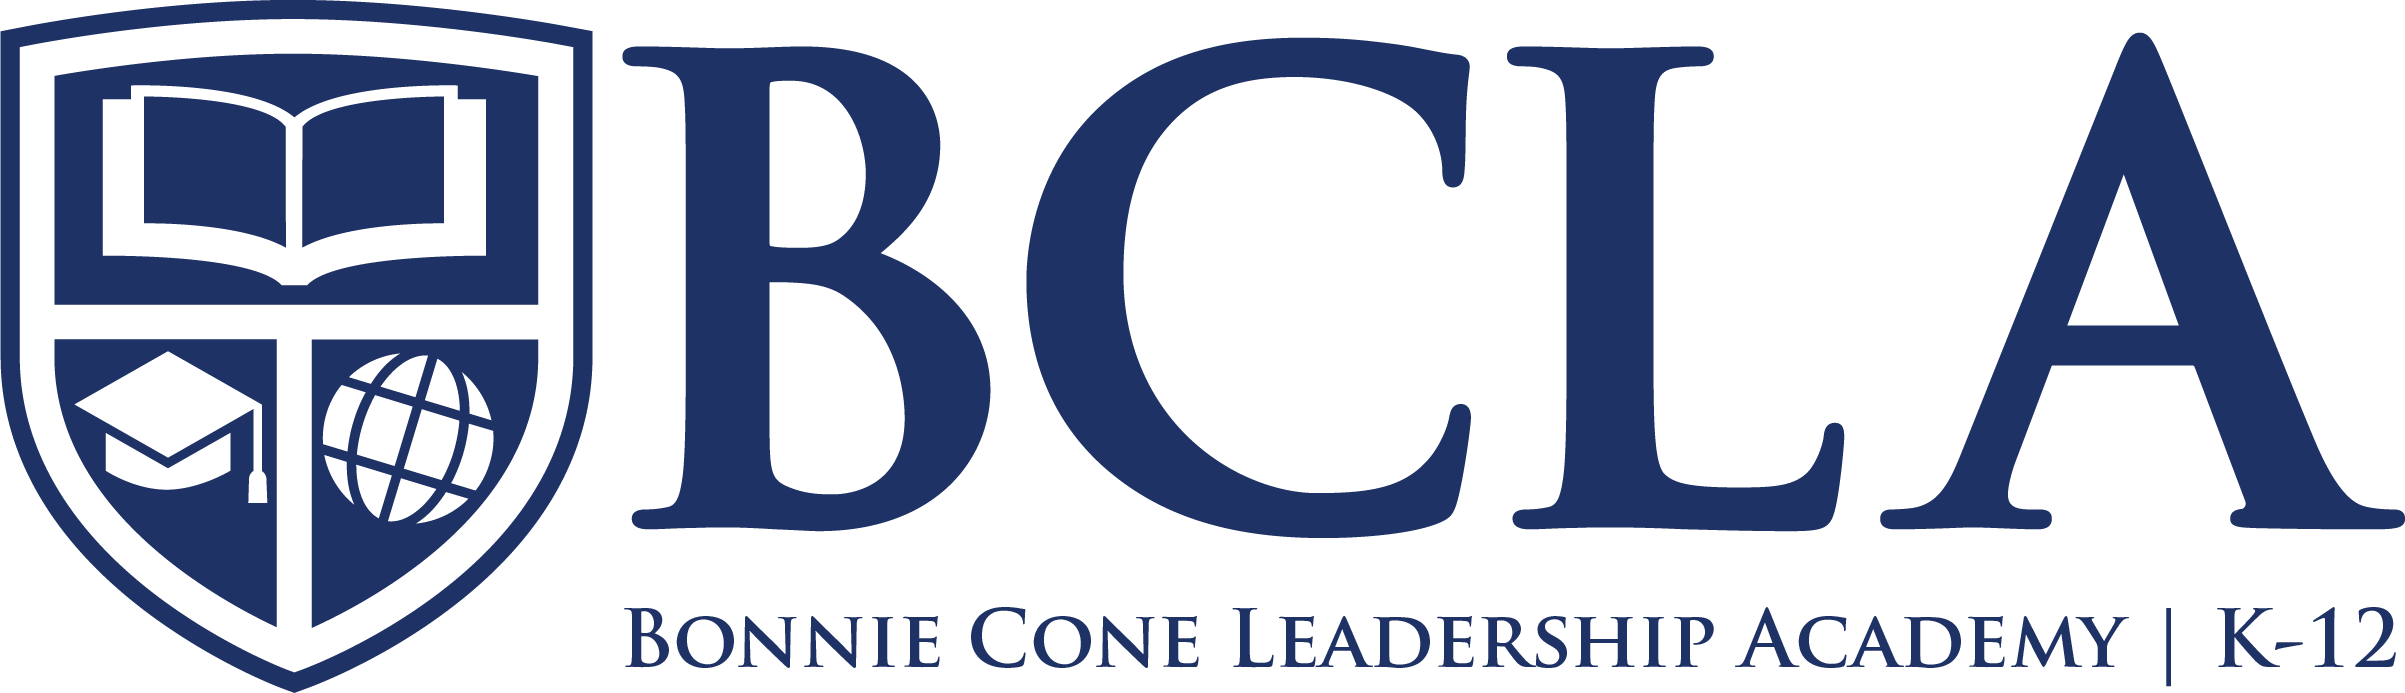 Bonnie Cone Leadership Academy logo